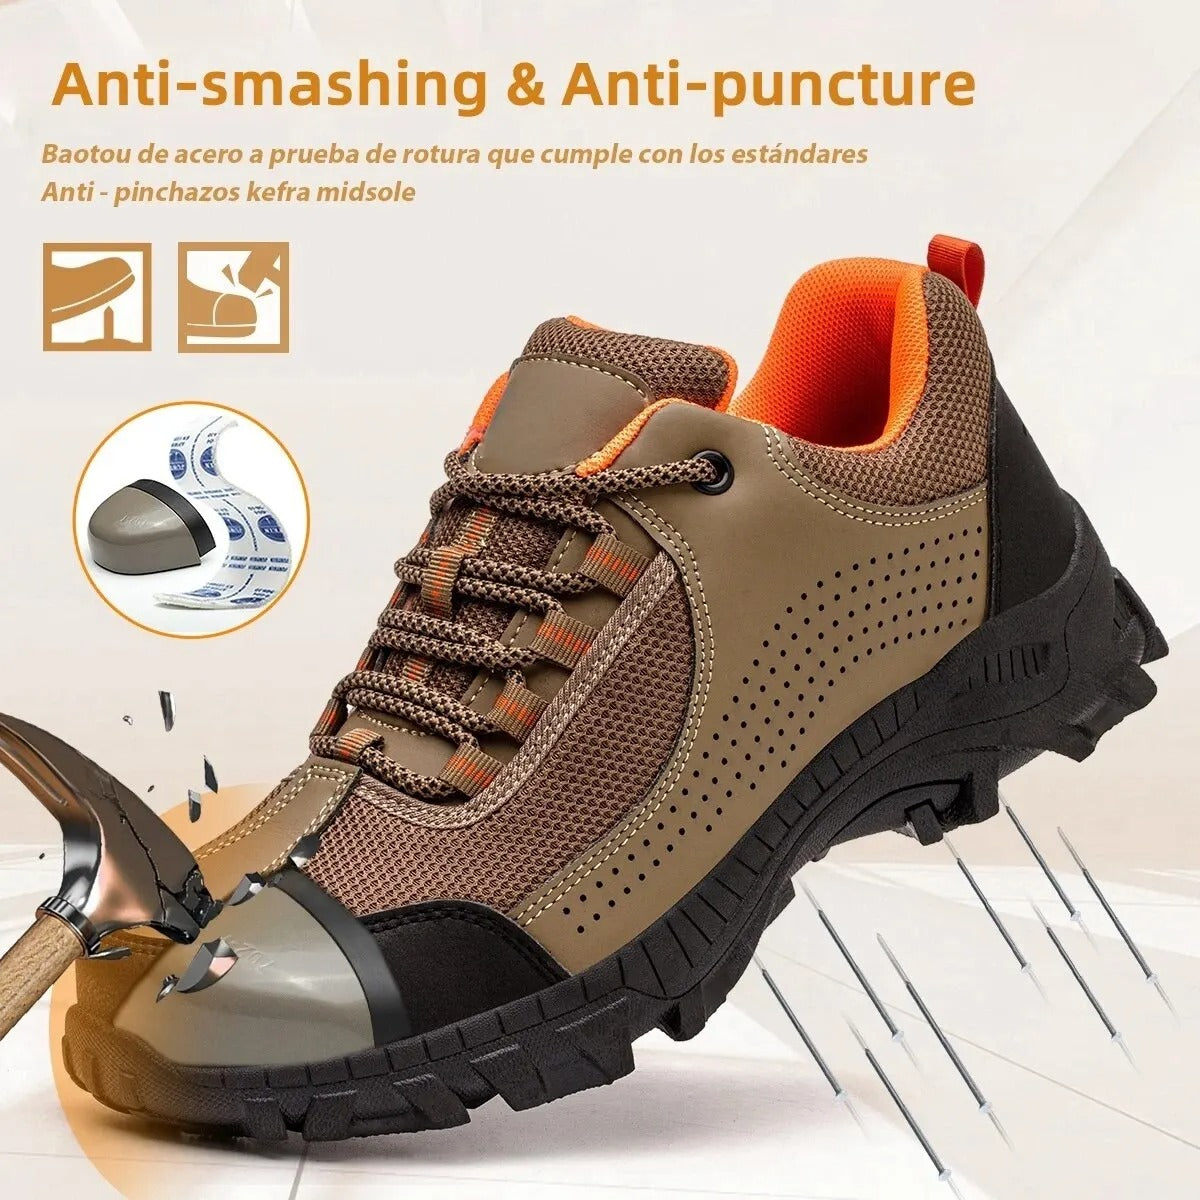 Zapatos de seguridad para trabajo, zapatos industriales, antipinchazos con punta de acero, zapatos de trabajo con protección